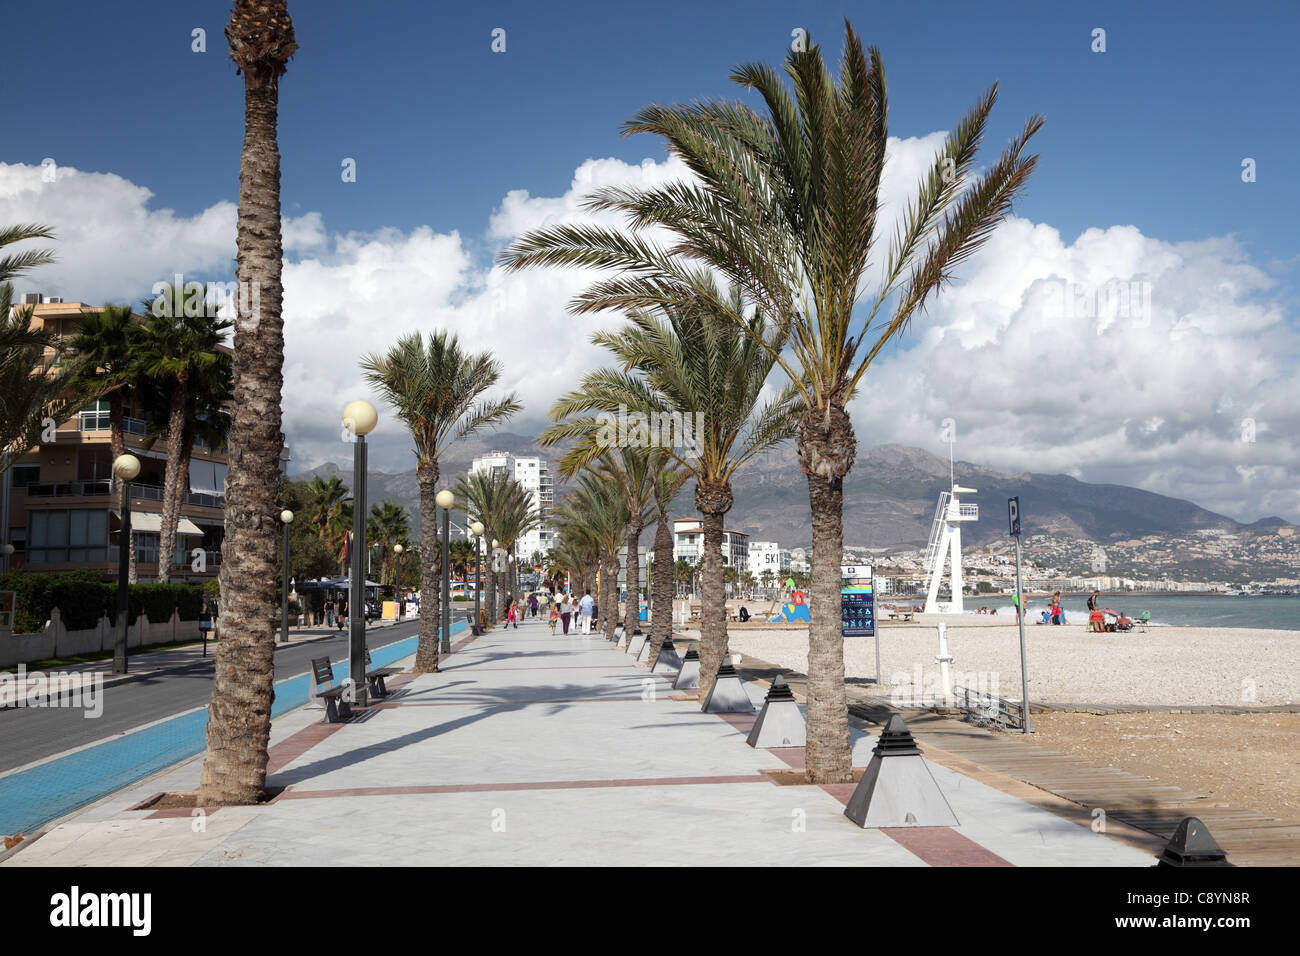 Promenade in Mediterranean resort L'Alfas del Pi in Spain Stock Photo